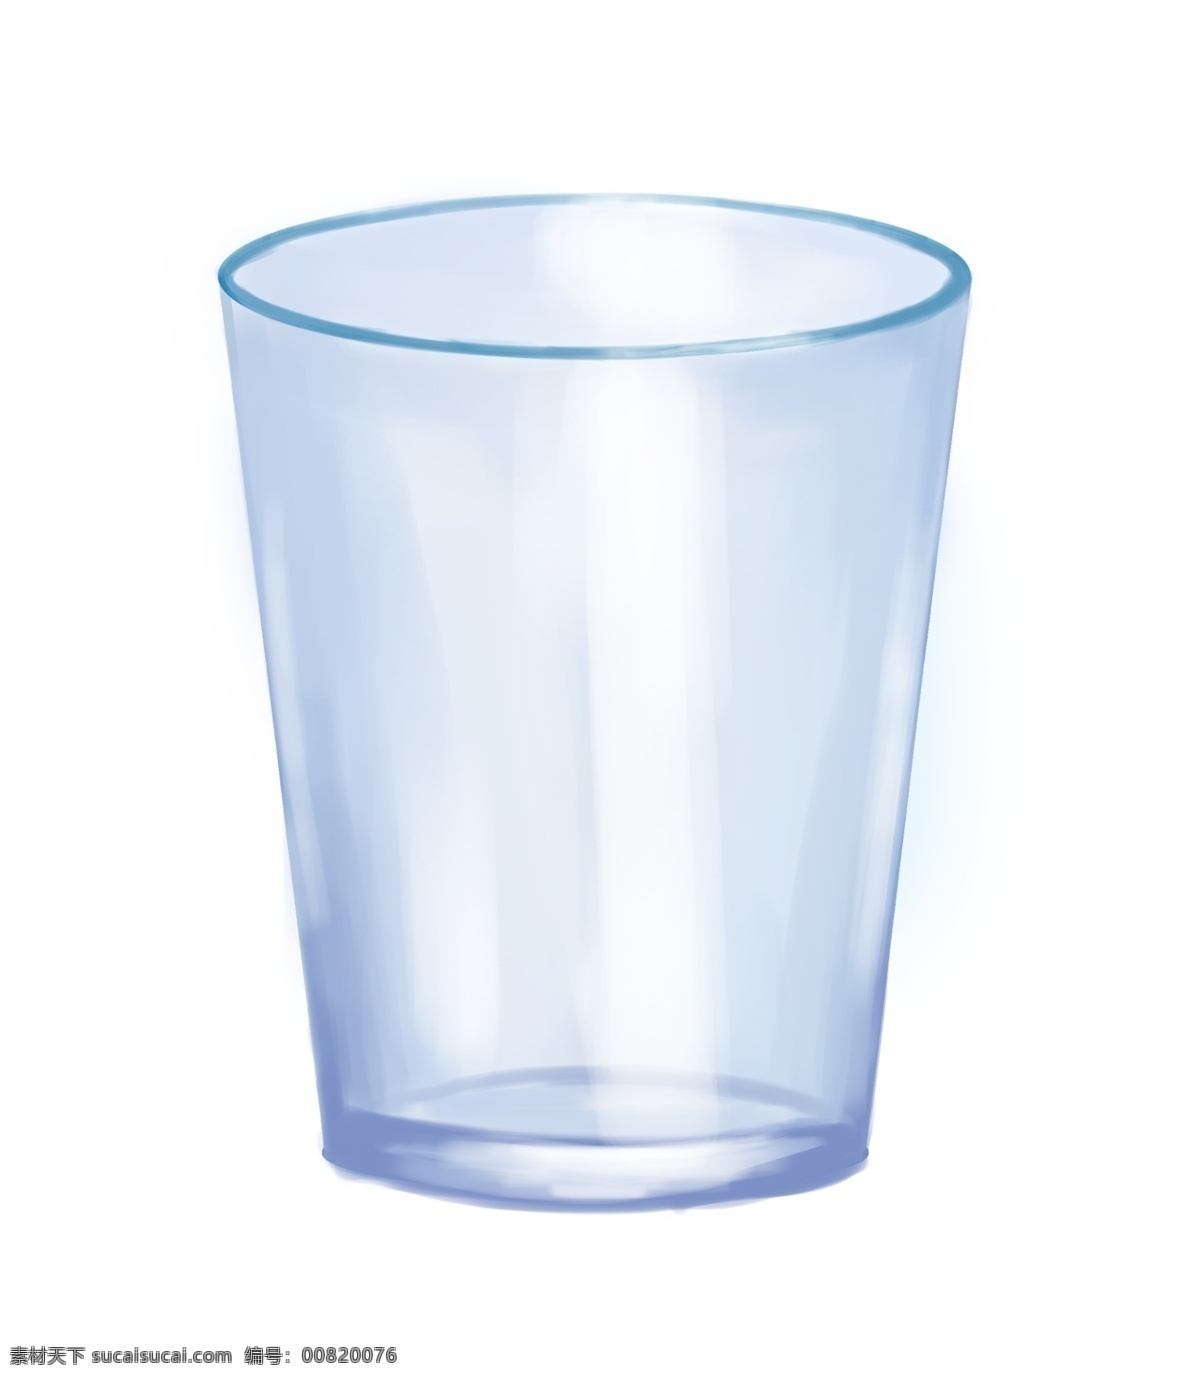 漂亮 玻璃 水杯 插画 玻璃水杯 玻璃杯 玻璃器皿 玻璃容器 漂亮的杯子 蓝色玻璃杯 杯子